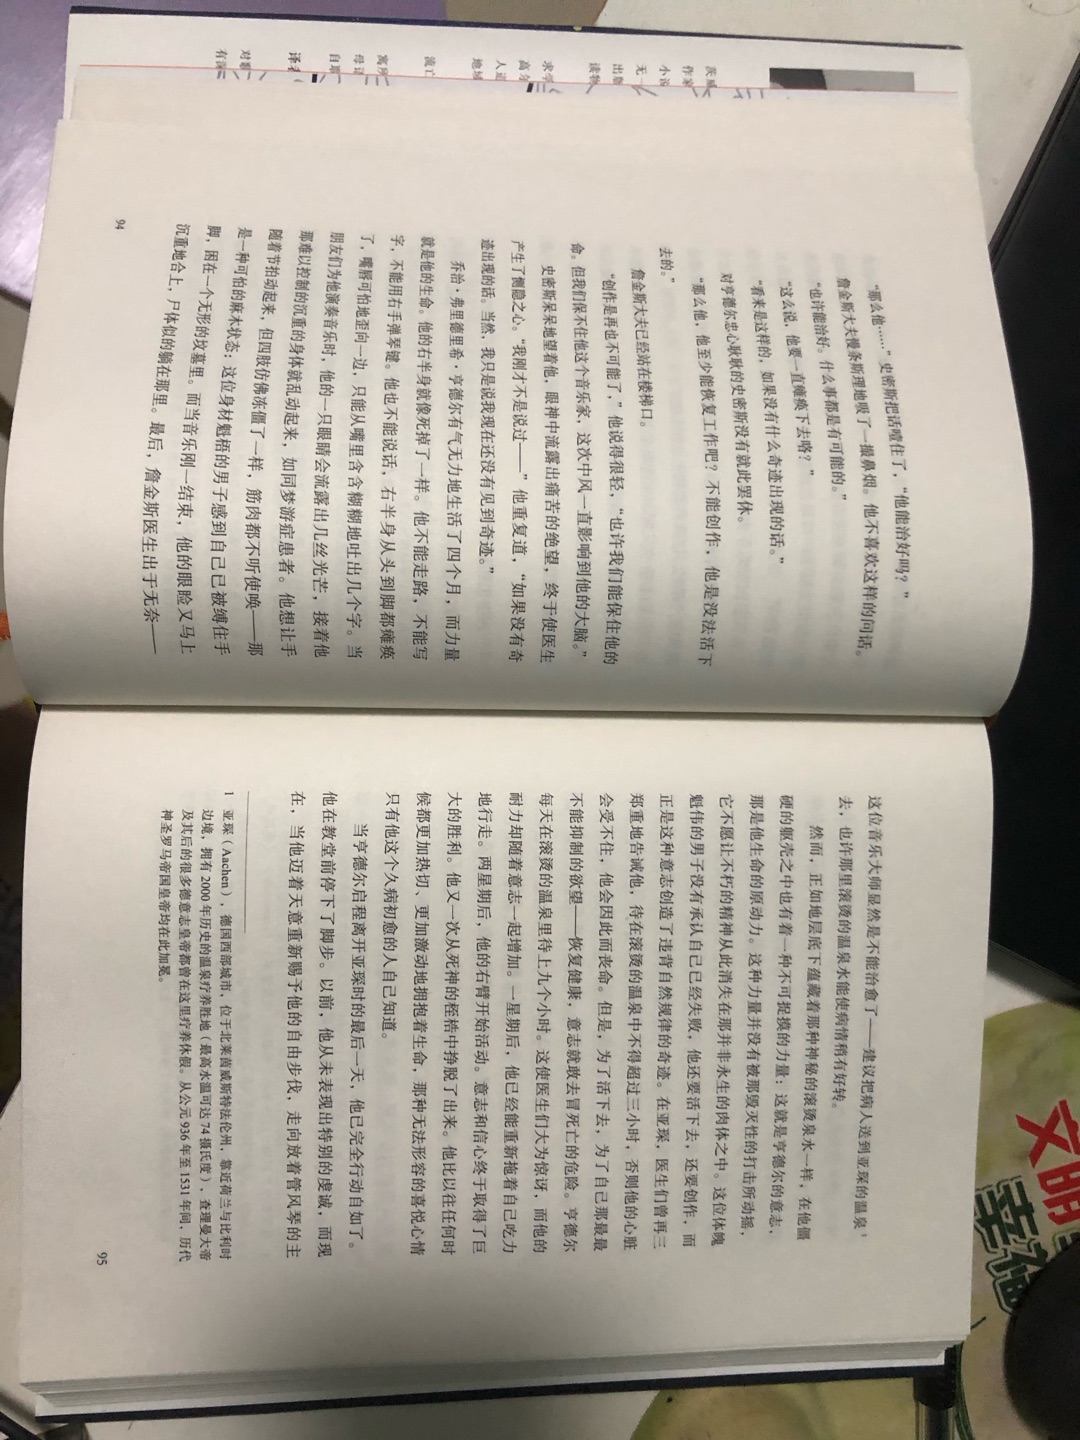 《人类群星闪耀时》是2011年6月天津人民出版社出版的图书，是人类“历史上最好的传记作家”——斯蒂芬·茨威格的传记名作之一。本书共收入他的历史特写14篇，分别向我们展现了14个决定世界历史的瞬间：千年帝国拜占庭的陷落、巴尔沃亚眺望水天一色的太平洋、亨德尔奇迹的精神复活、老年歌德热恋的悲歌、滑铁卢的一分钟， 英雄的瞬间， 南极探险的斗争，西塞罗，威尔逊的梦想与失败以及马赛曲神佑般的创作。而这14个历史瞬间神奇地降临到14位传主的身上，他们或是被命运高高举起，送入英雄们的殿堂；或是被狠狠嘲弄，抛入千秋遗恨的行列。当强烈的个人意志与历史宿命碰撞之际，火花闪烁，那样的时刻从此照耀着人类文明的天空。